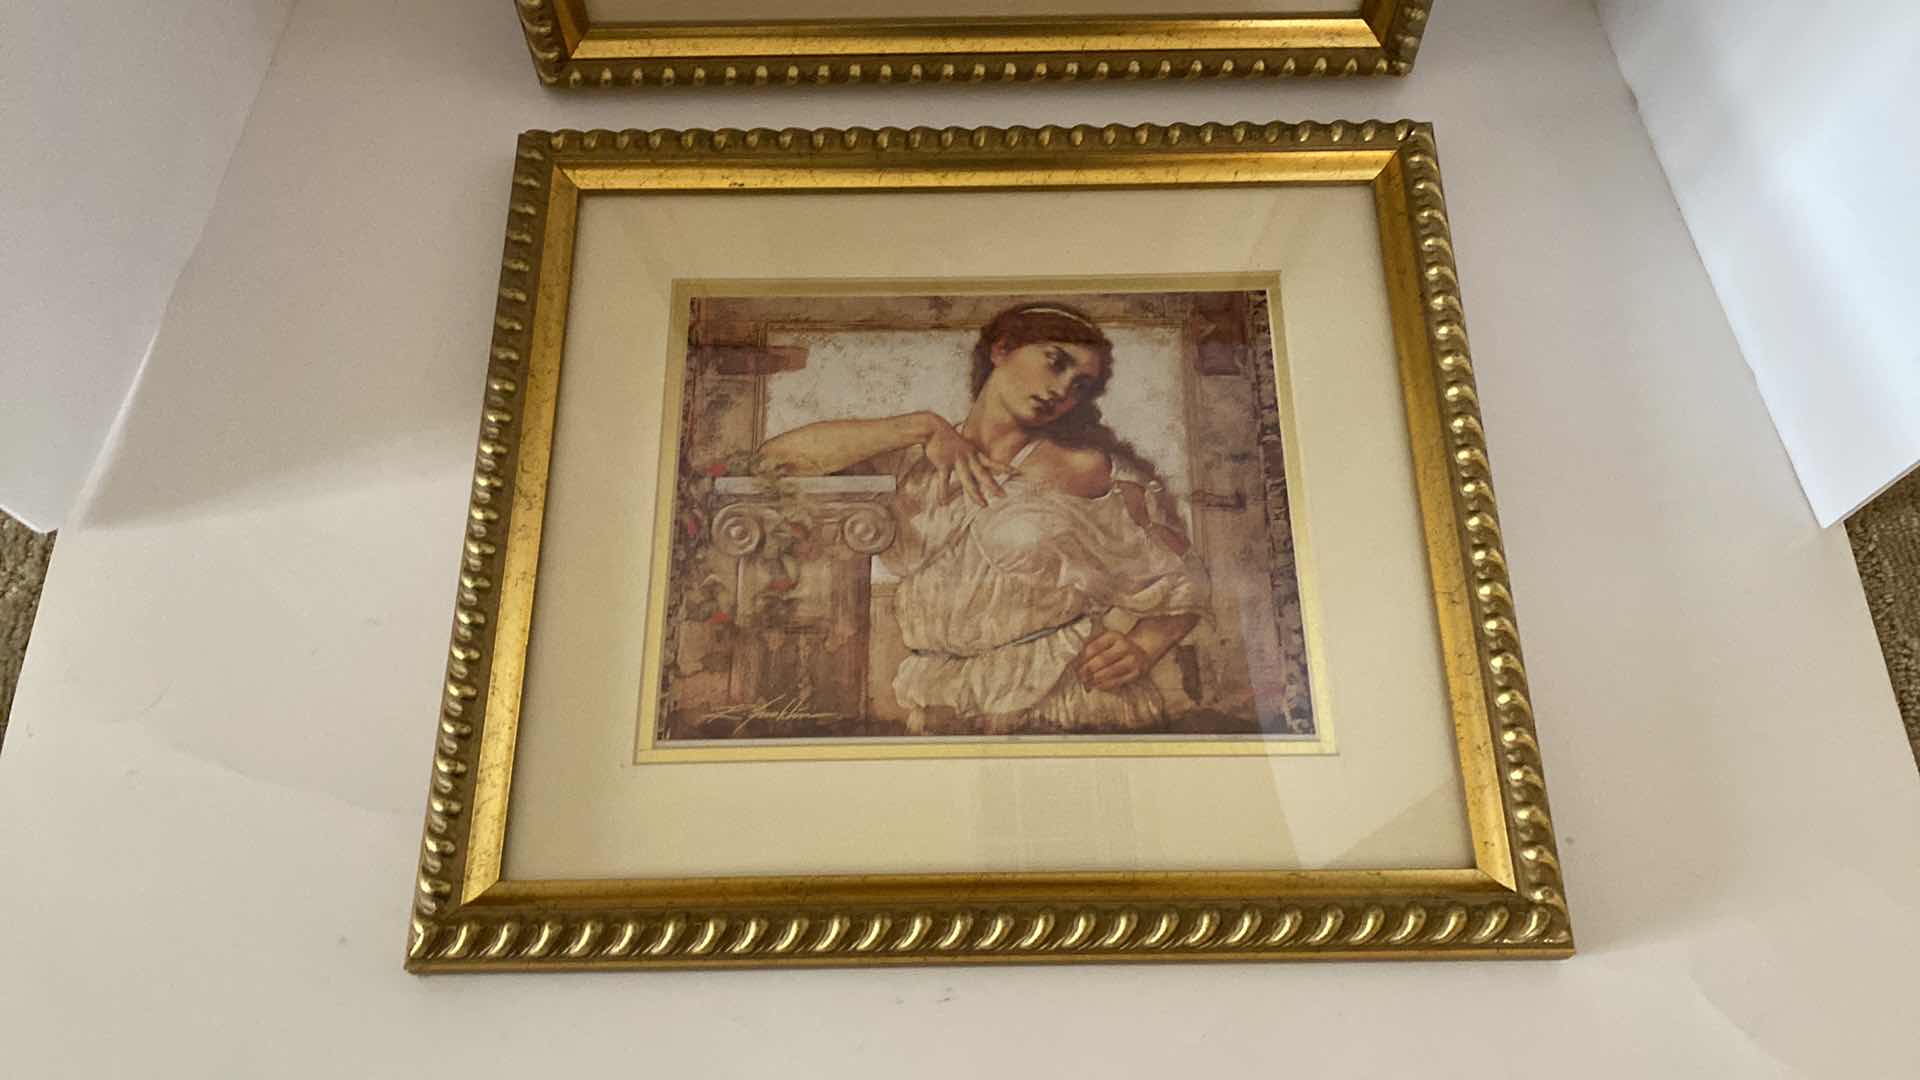 Photo 3 of PAIR OF GOLD FRAMED WOMEN ARTWORK 16” x 14”